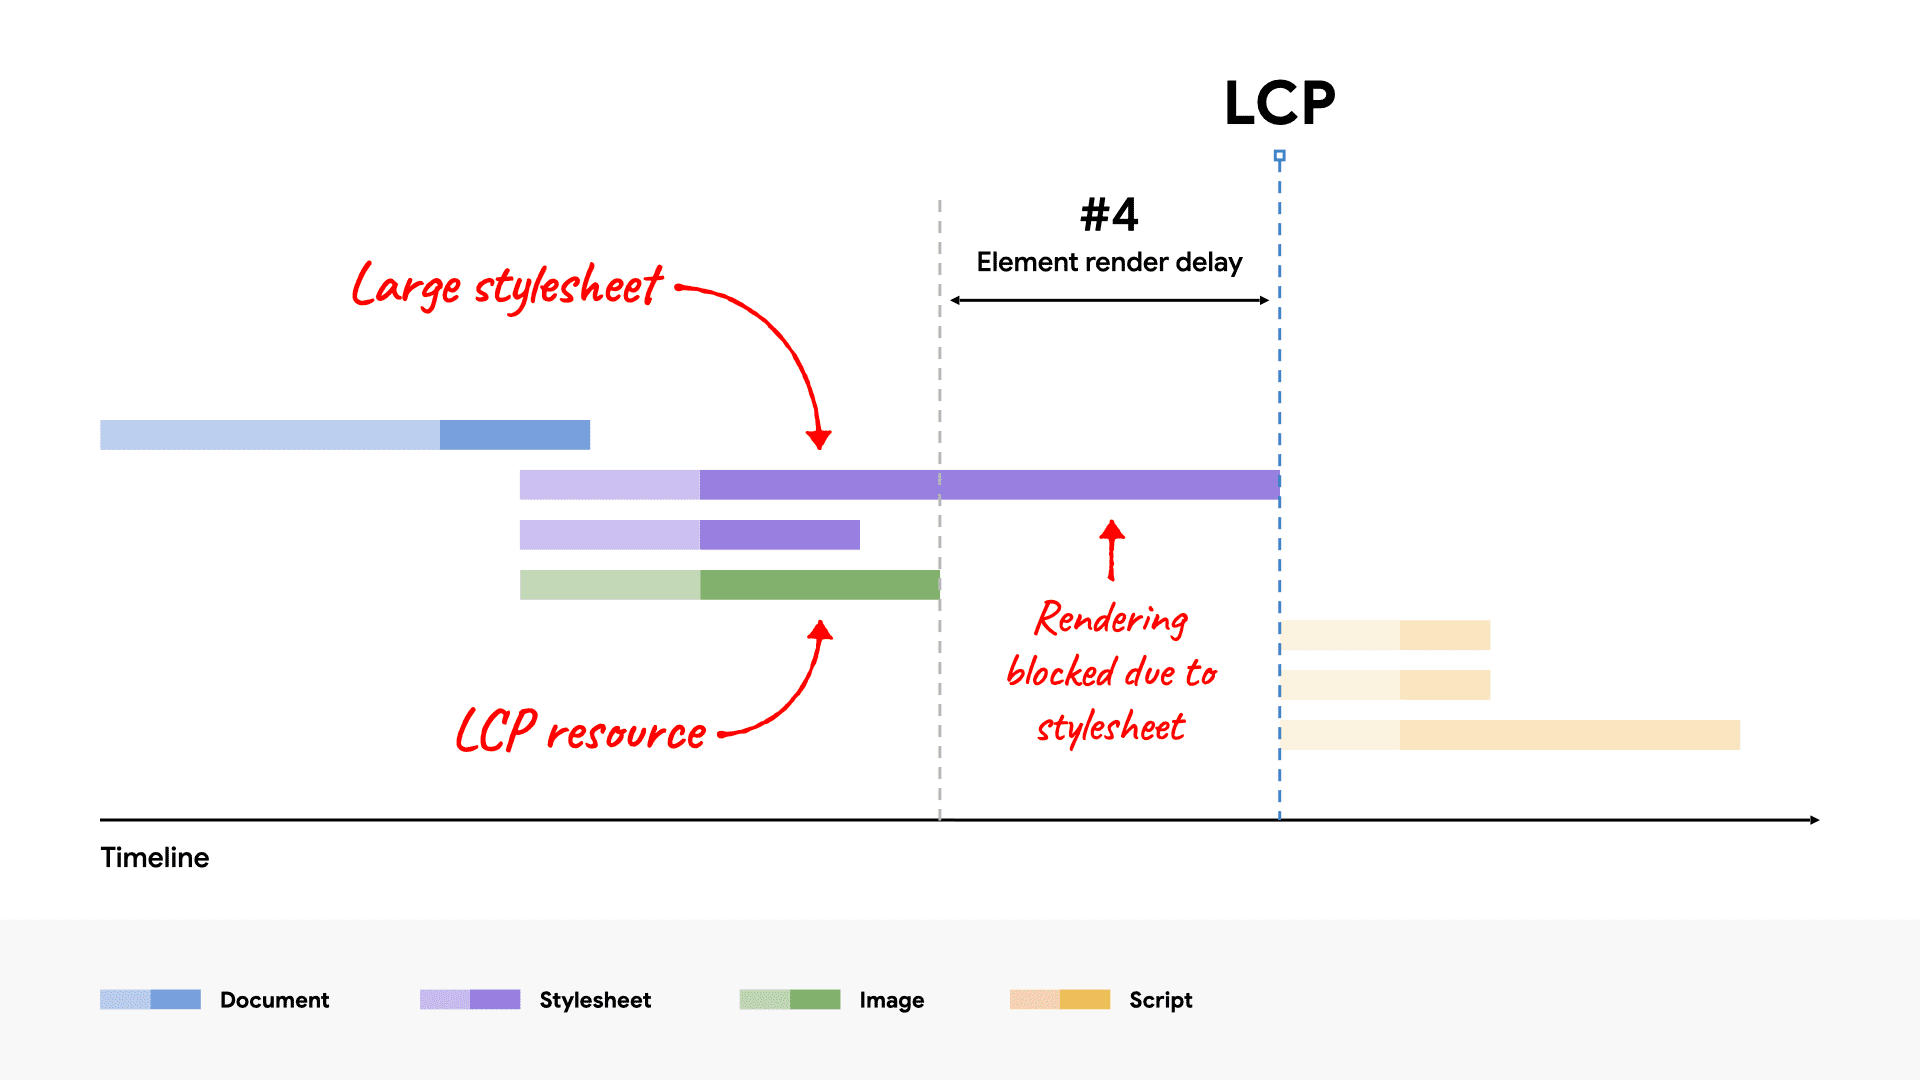 Водопадная диаграмма сети, показывающая большой CSS-файл, блокирующий отрисовку элемента LCP, поскольку его загрузка занимает больше времени, чем загрузка ресурса LCP.